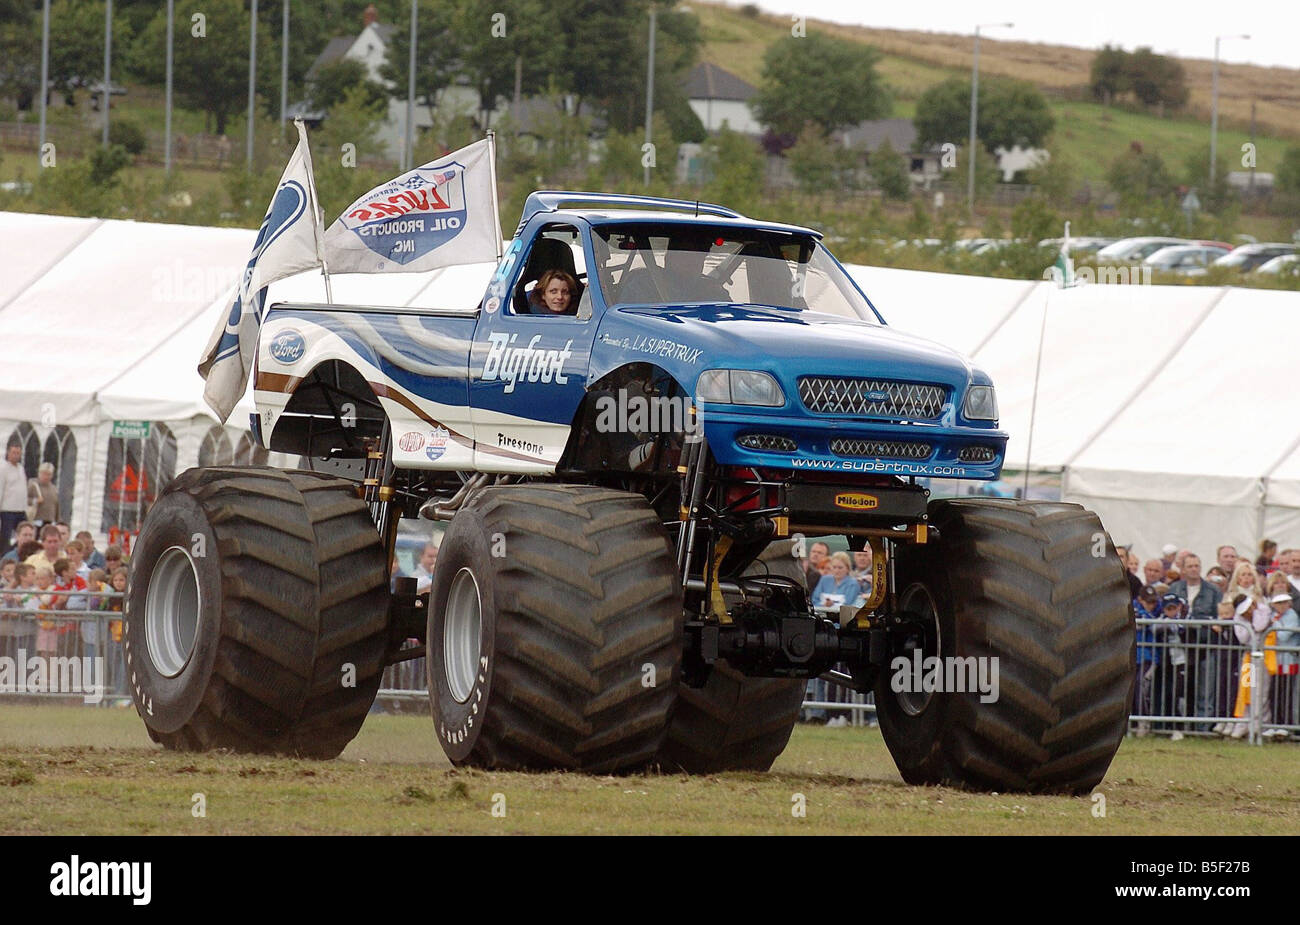 Le monster truck Big Foot divertit la foule au Nord Est de l'Angleterre Motorshow tenue à Herrington Park 07 08 05 Banque D'Images